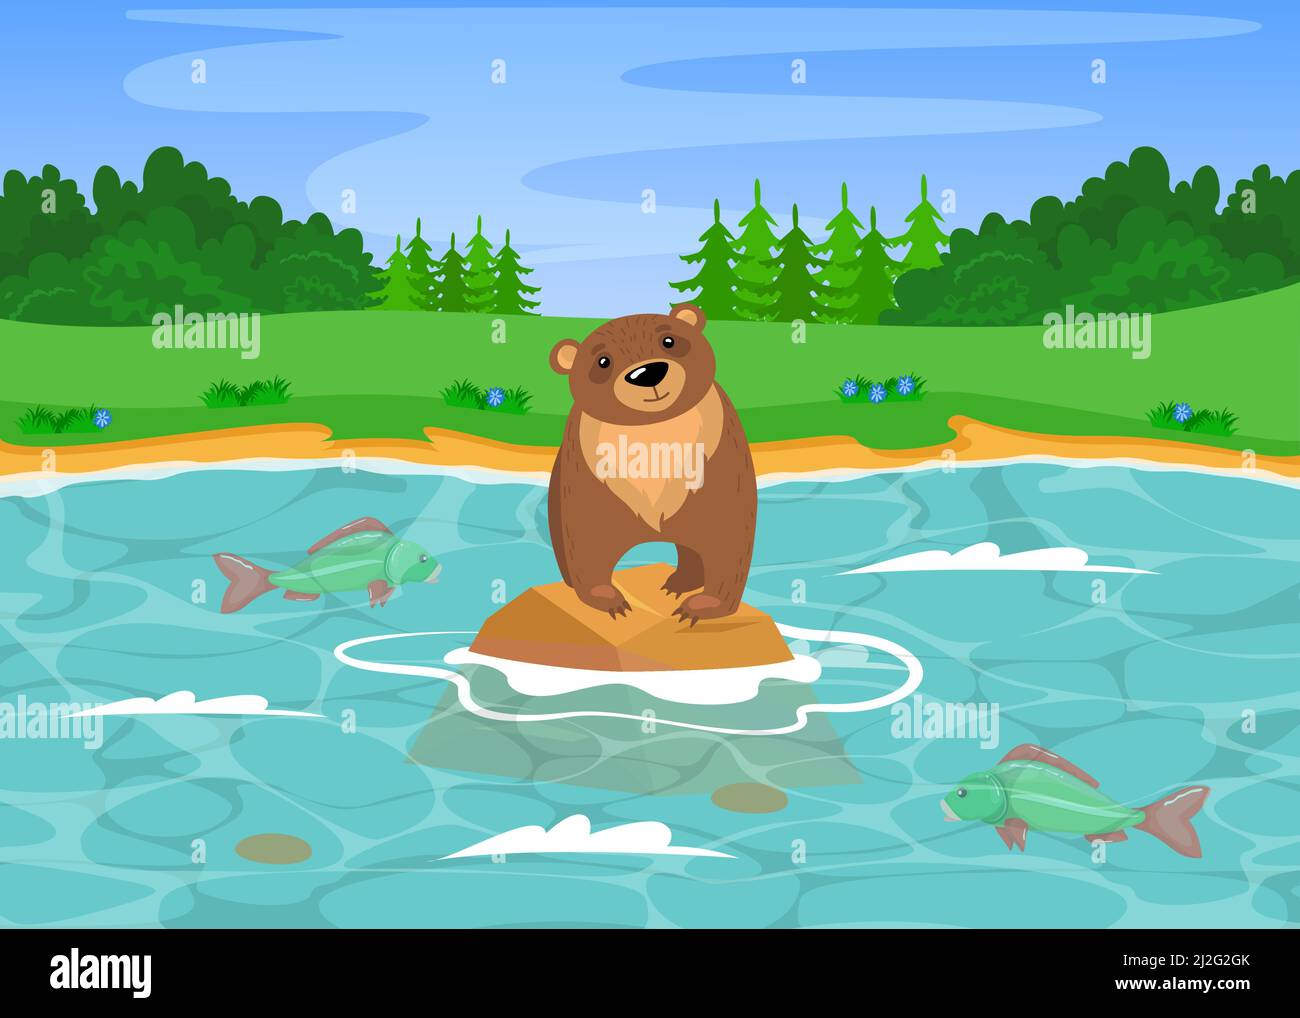 Pêche de l'ours grizzli sauvage dans la rivière. Illustration vectorielle de dessin animé. Adorable ours brun sauvage debout sur la pierre dans la rivière et chasse au poisson. Naturel Illustration de Vecteur